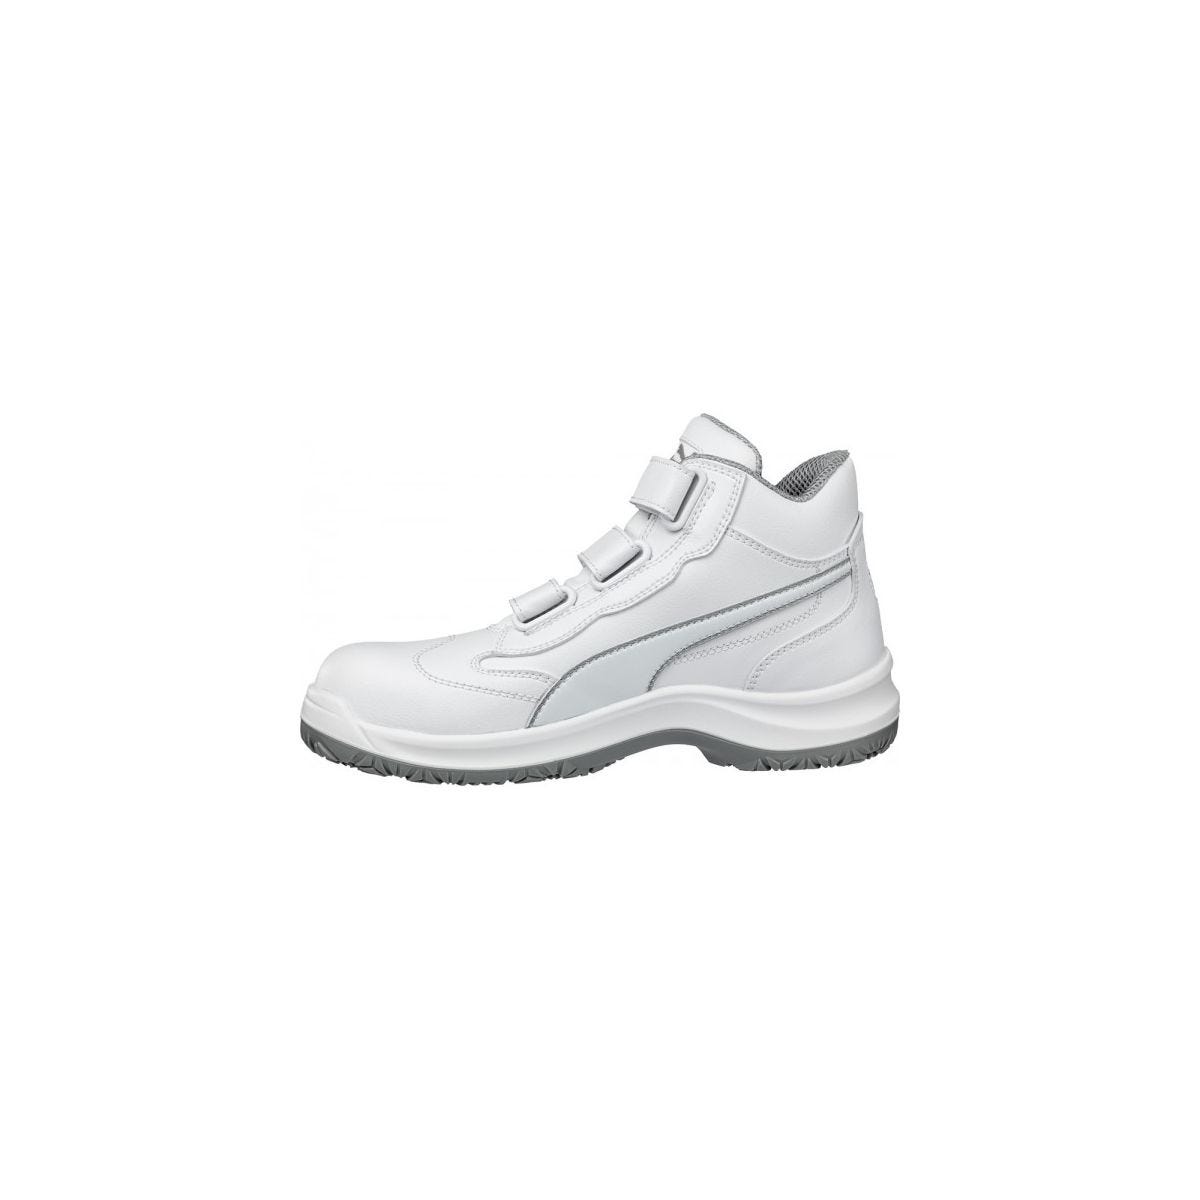 Chaussures de sécurité Absolute Mid S2 Blanc - Puma - Taille 45 4